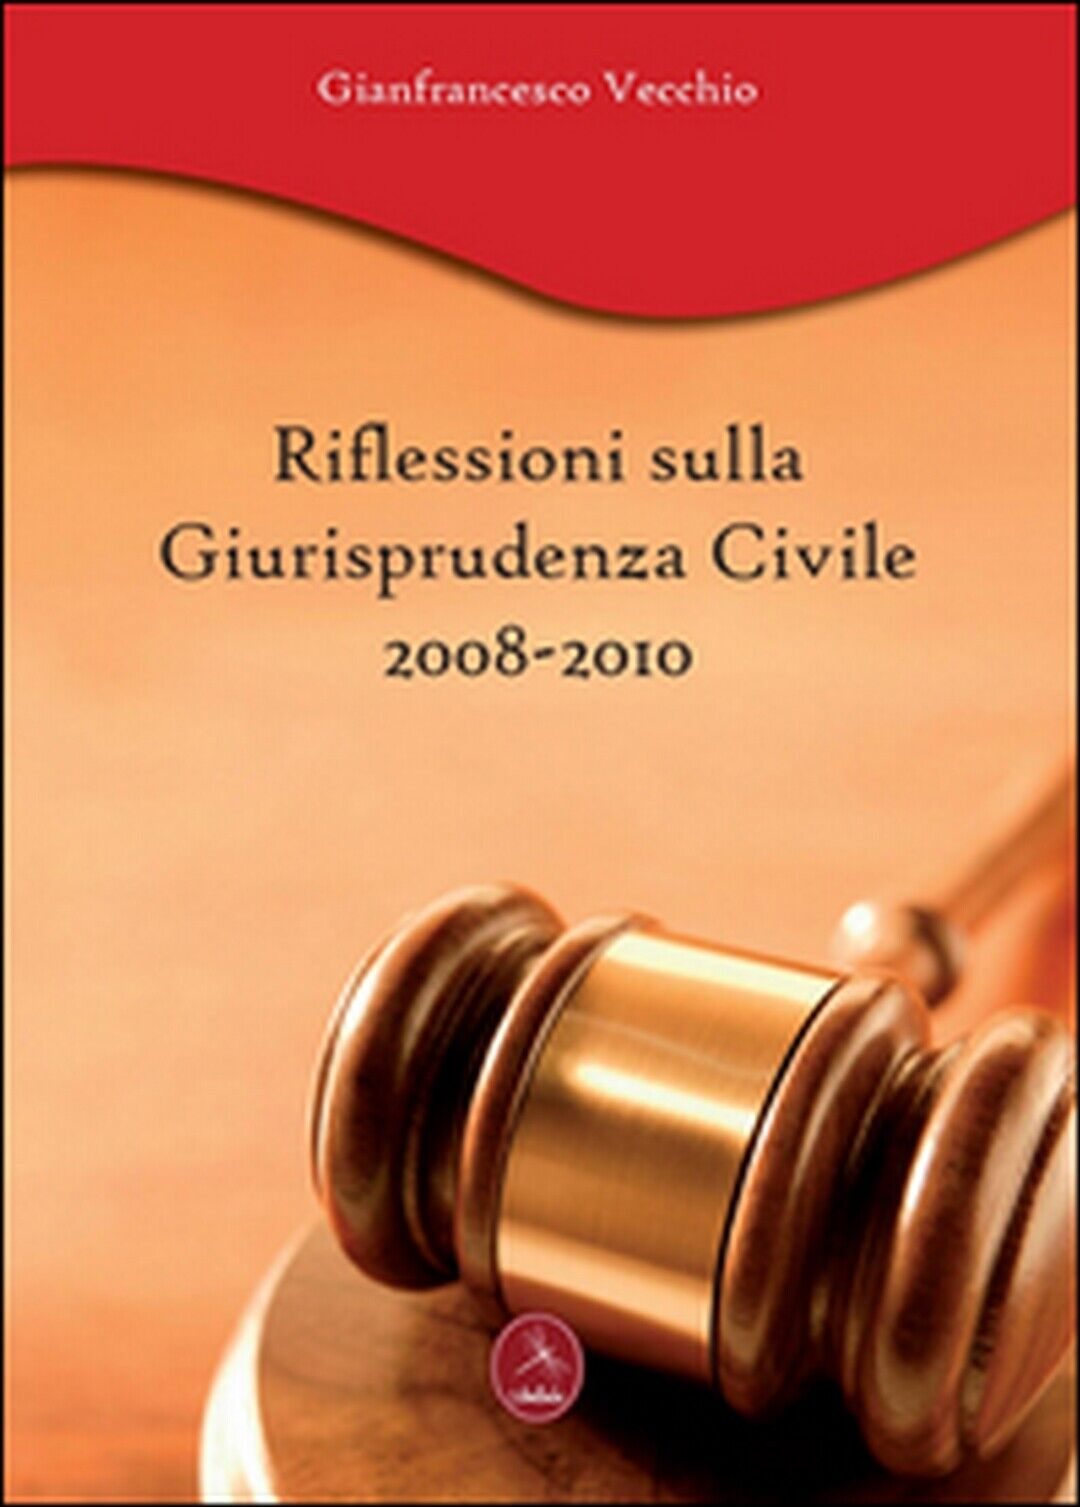 Riflessioni sulla giurisprudenza civile 2008-2010, Gianfrancesco Vecchio,  2011